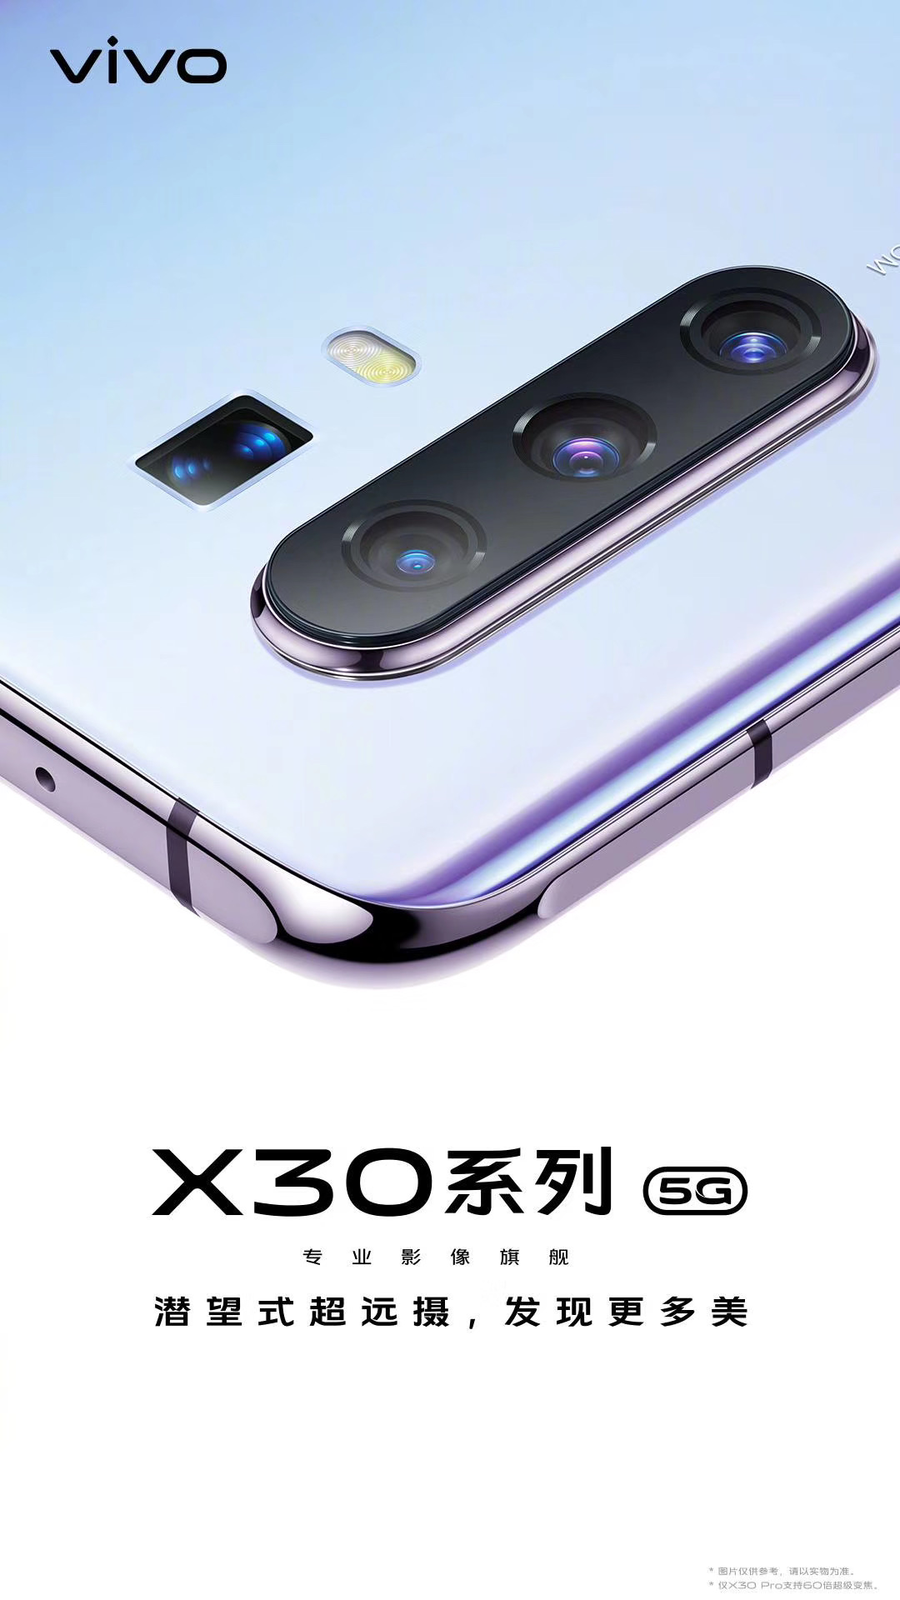 官方宣布vivo X30系列产品将于12月16日宣布公布，最大可完成60倍调焦